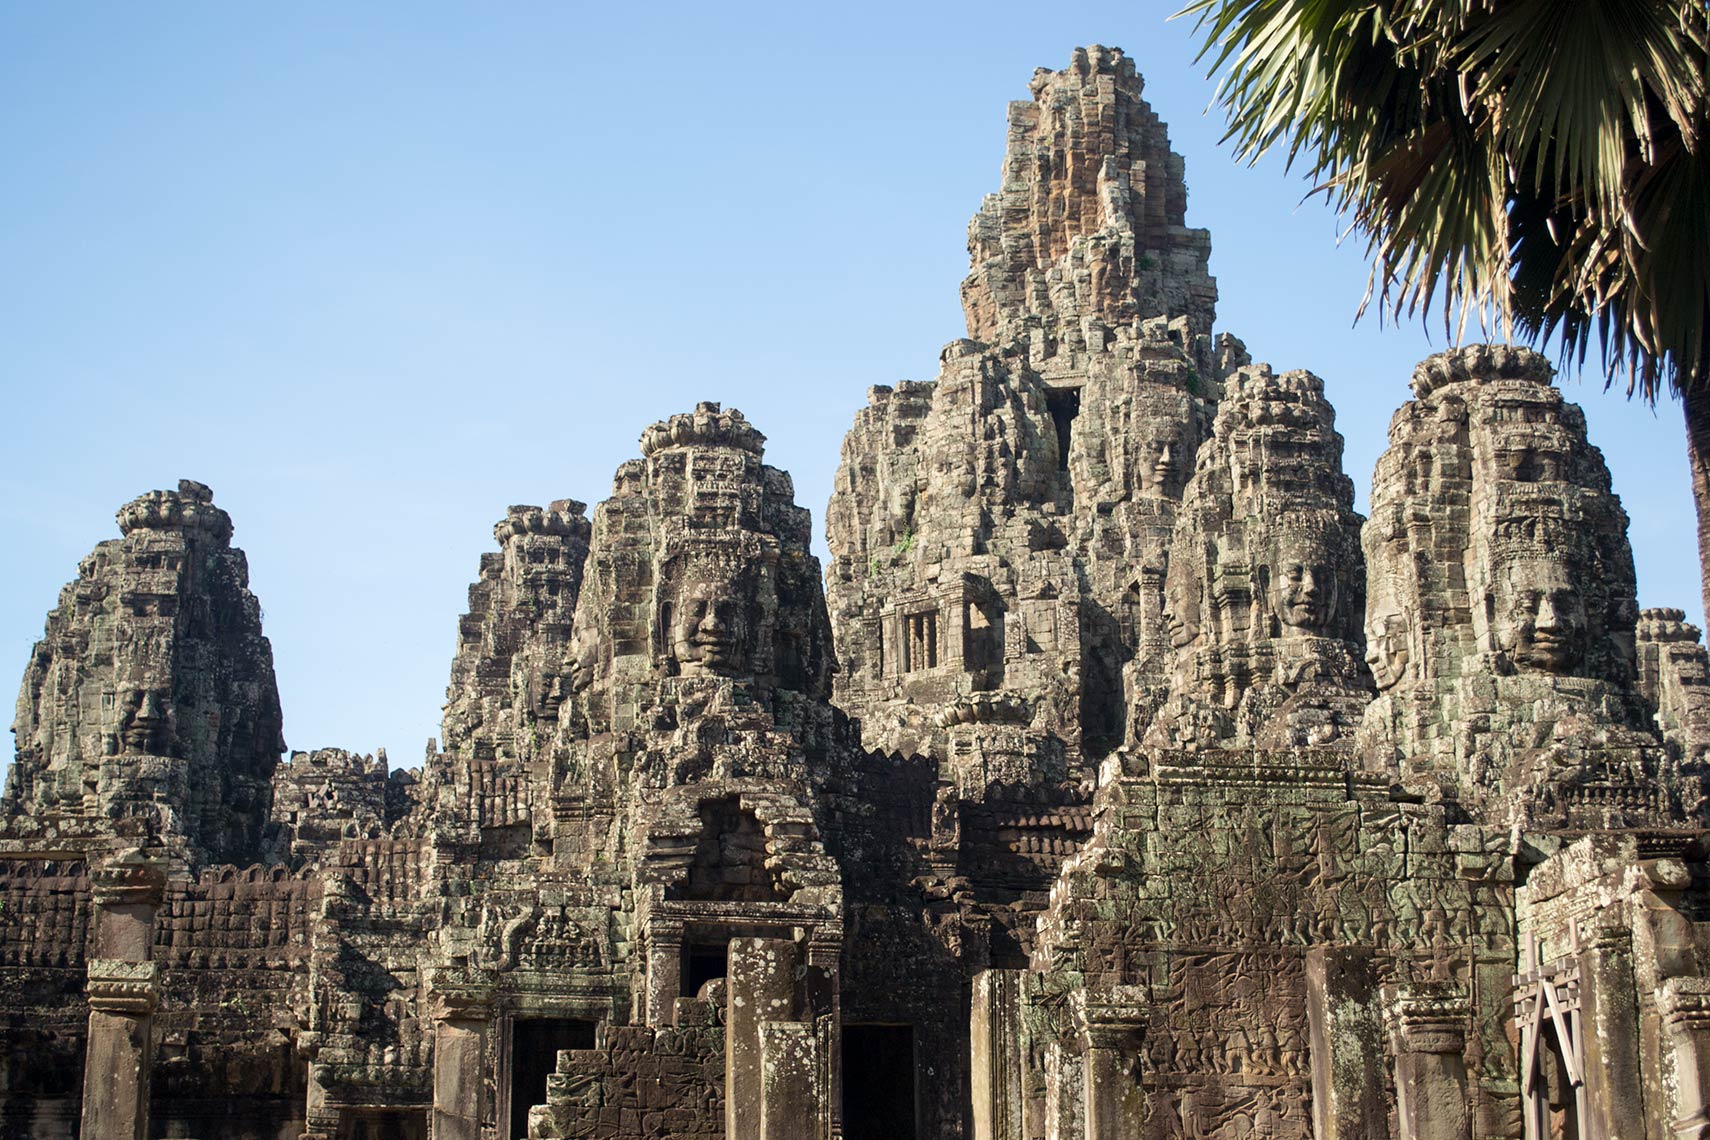 камни камбоджи